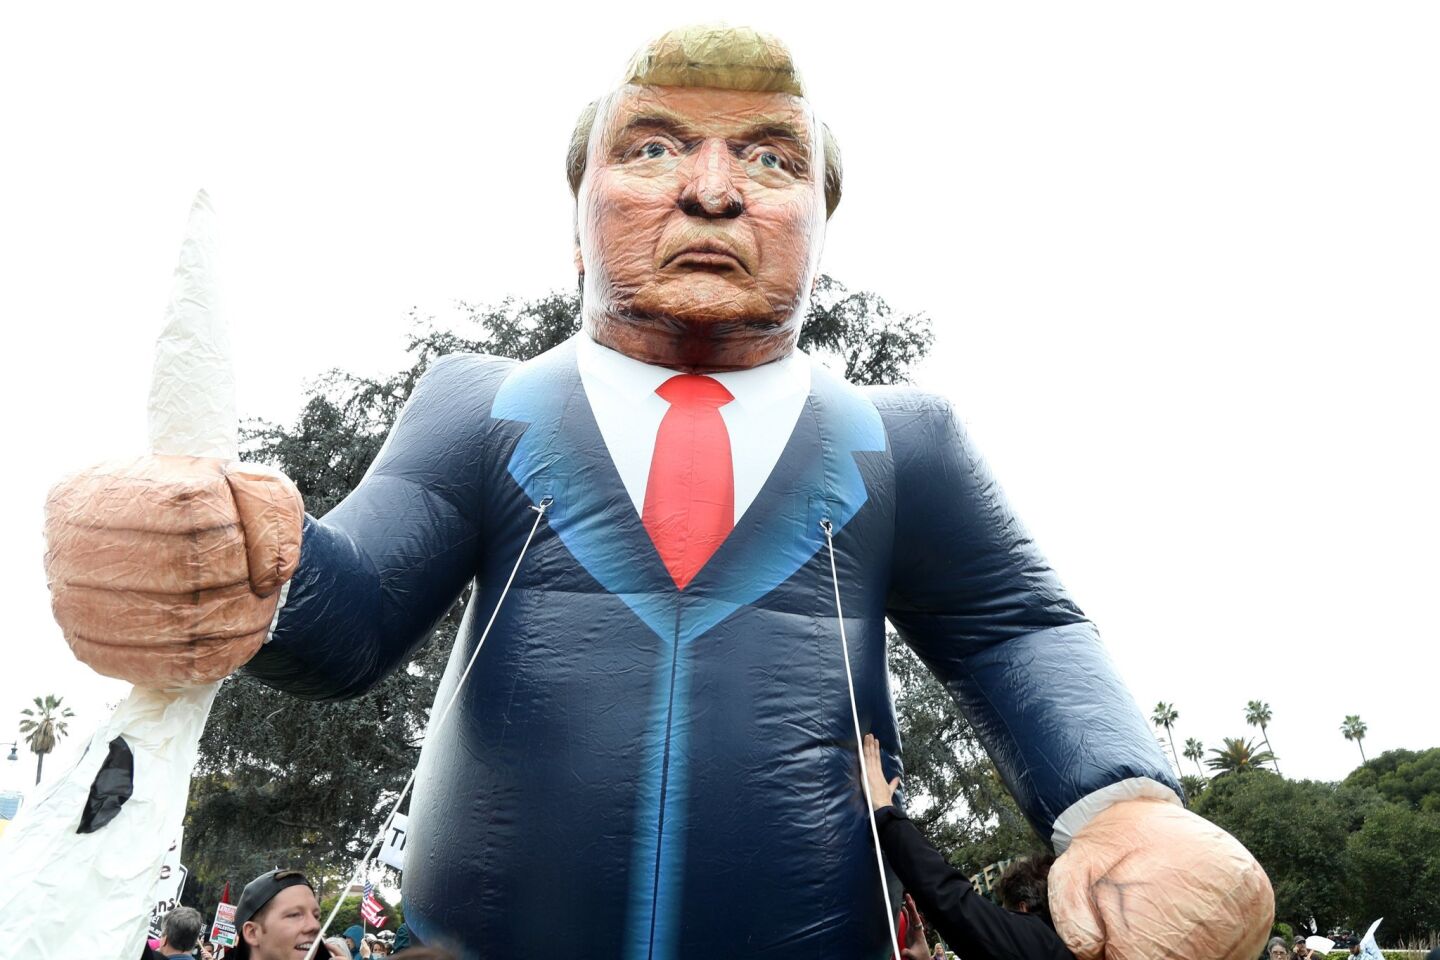 Manifestantes protestan con un muñeco inflable con la imagen de Trump. El mandatario aterrizó en la tarde en el Aeropuerto Internacional de Los Ángeles, donde ningún funcionario local acudió a darle la bienvenida.